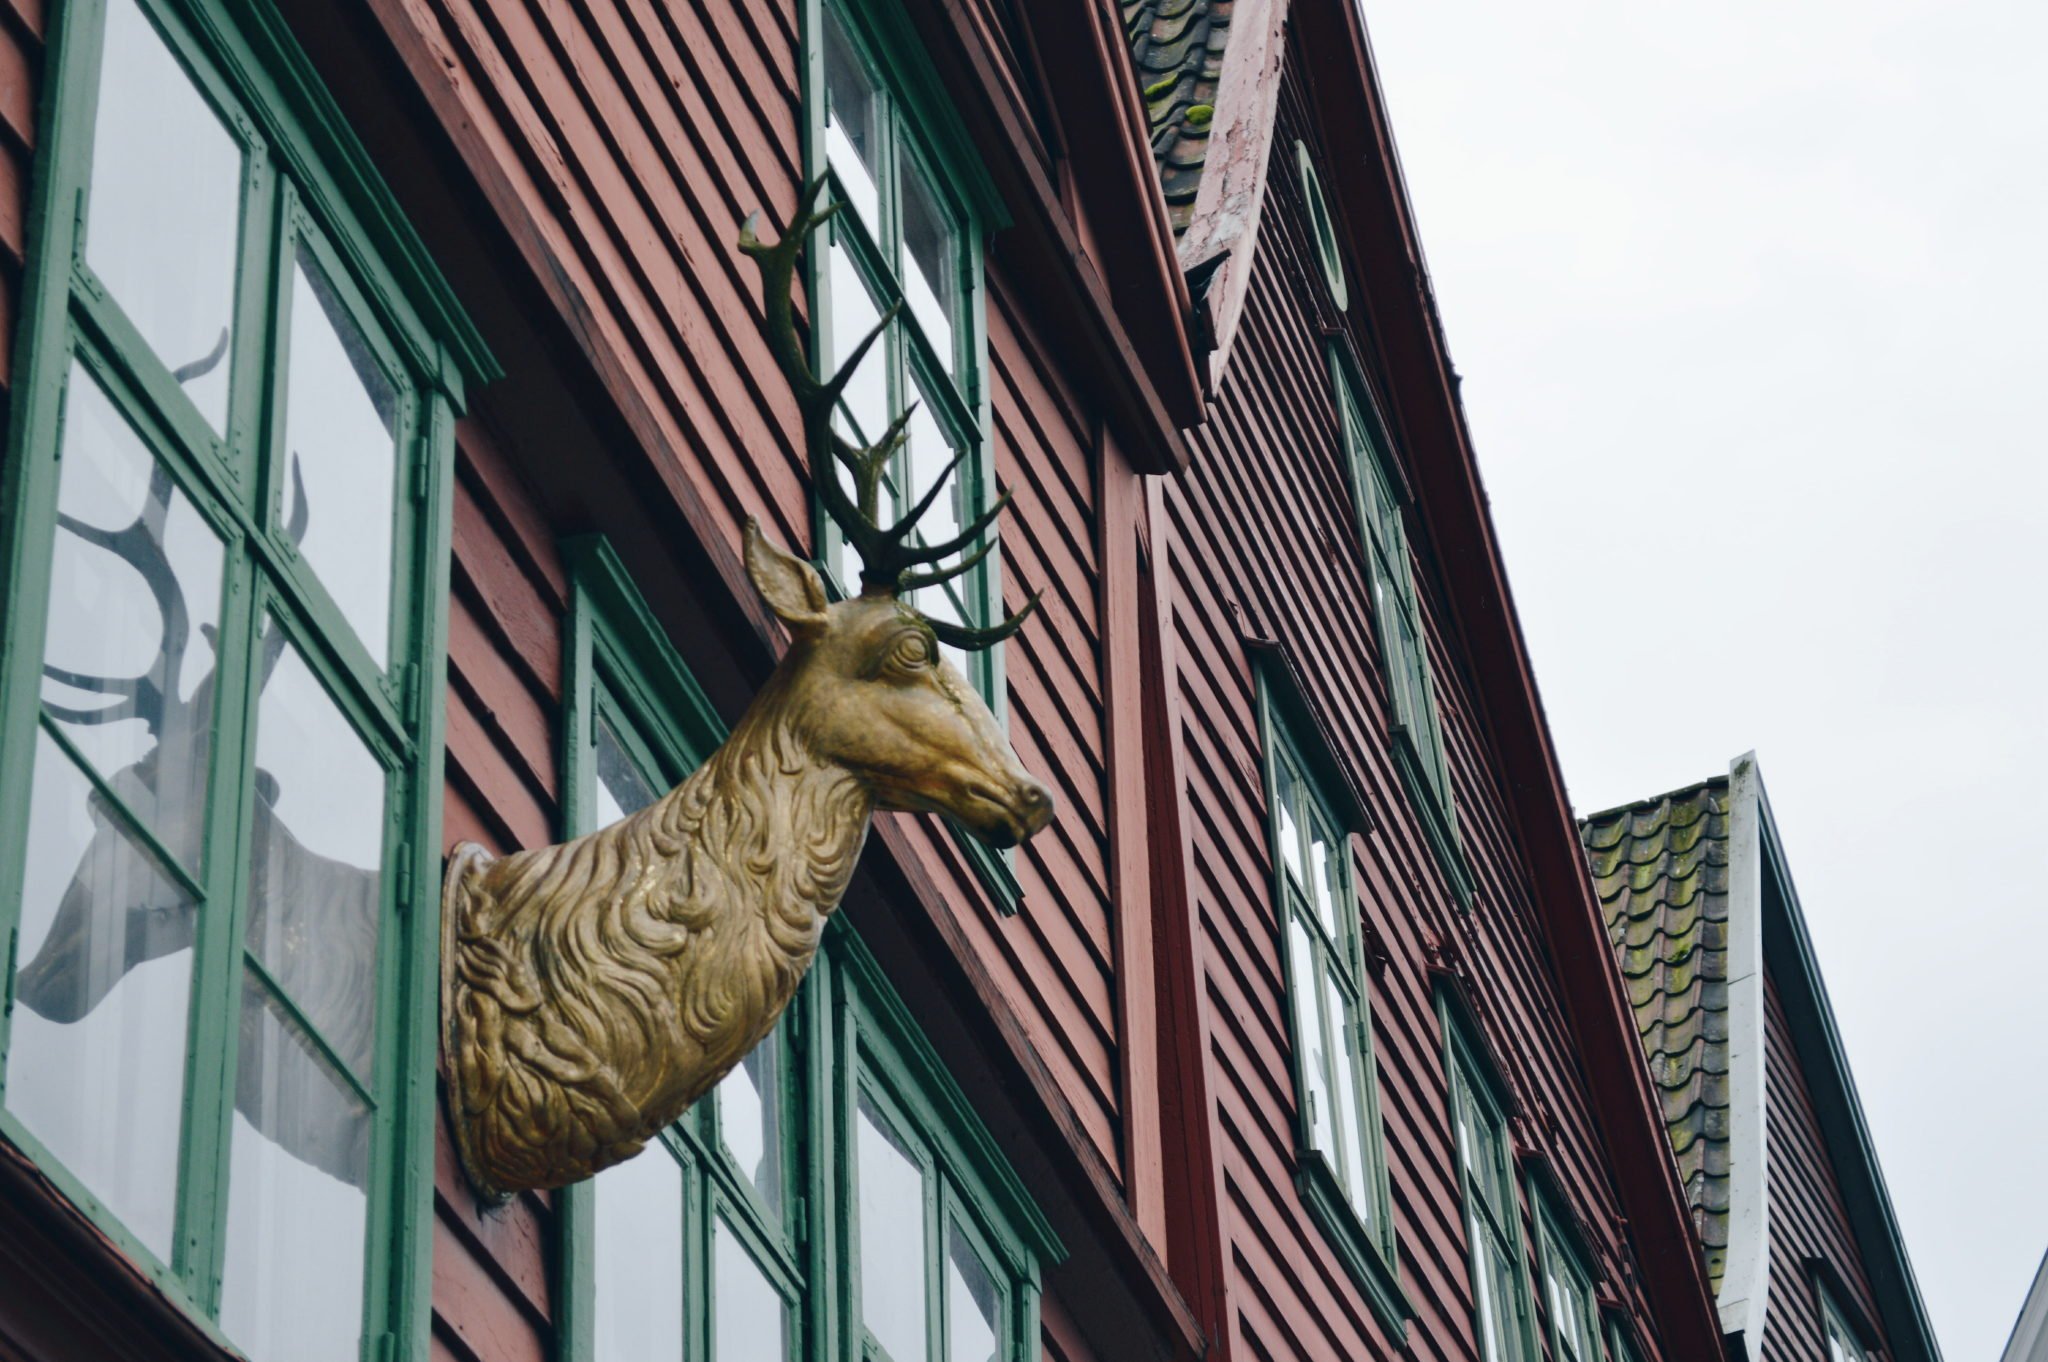 Dřevěná socha jelena na jednom z domů v Bryggenu